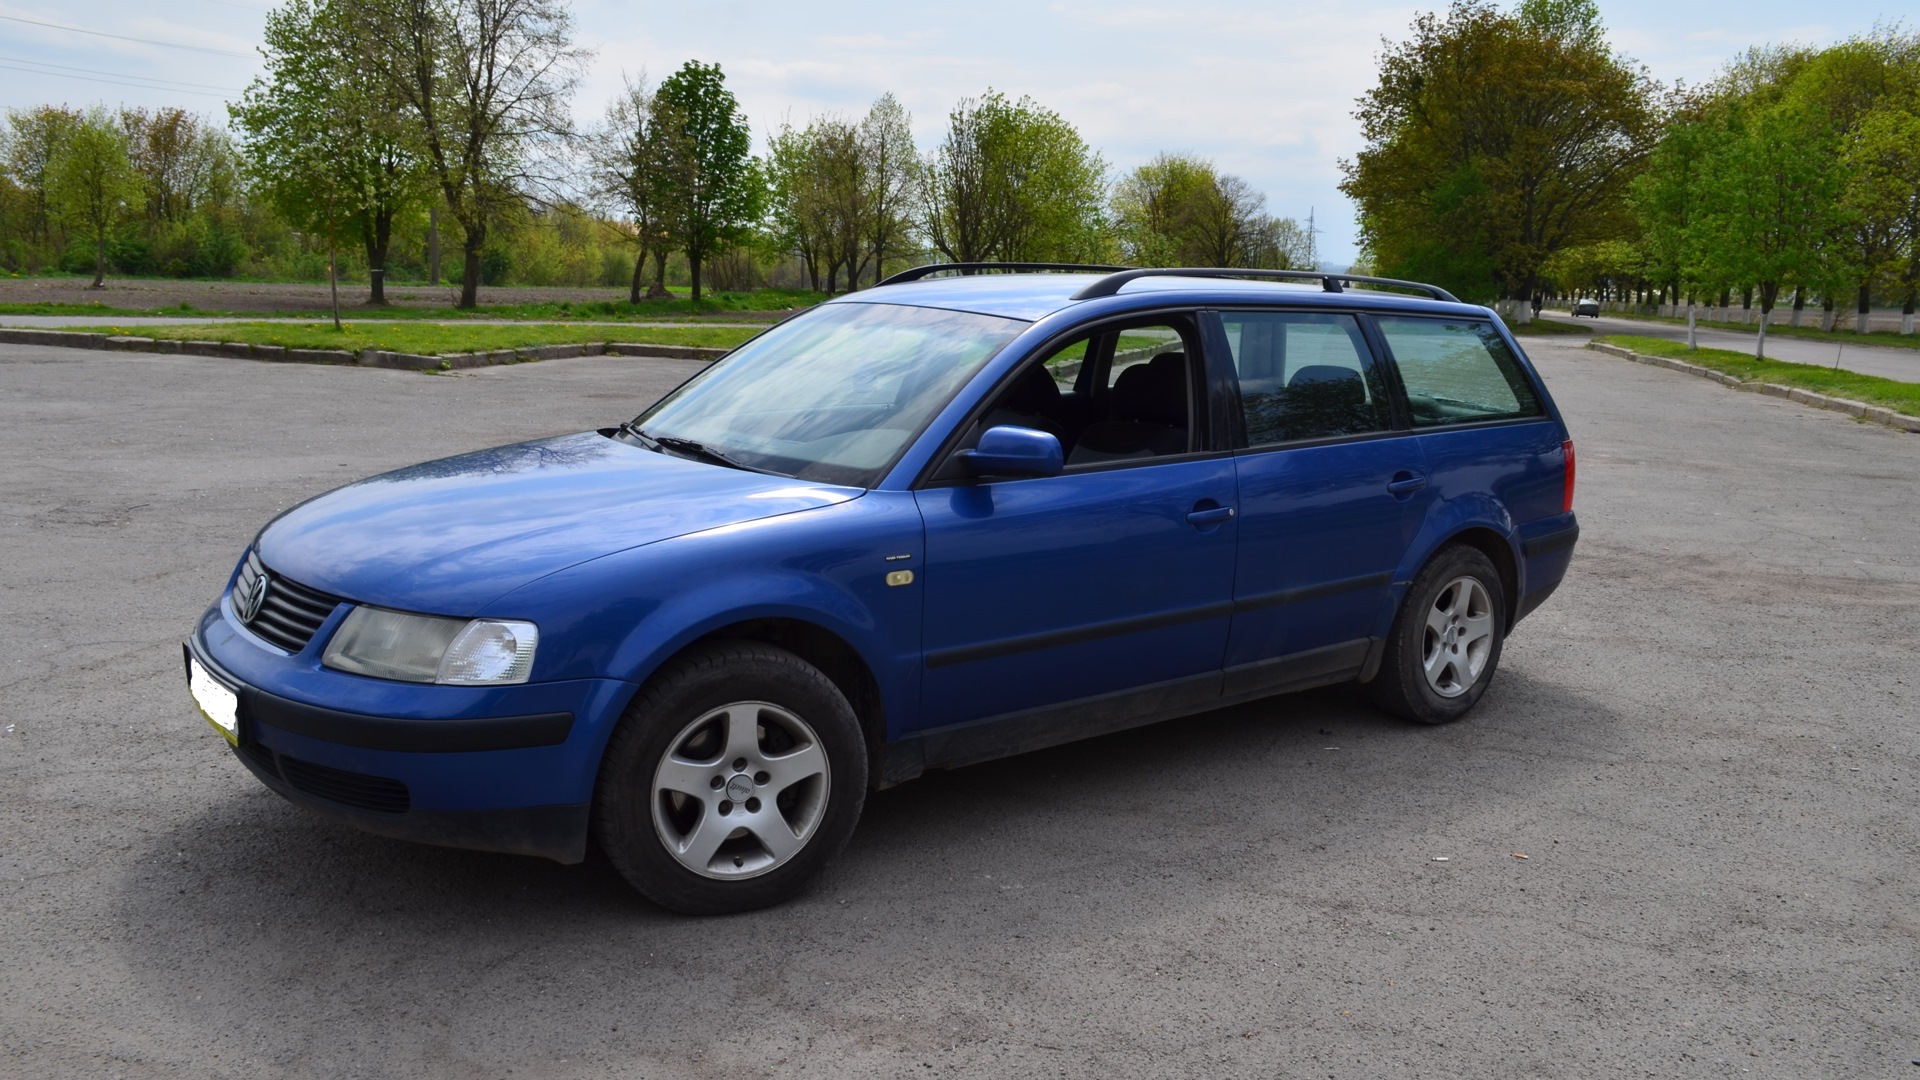 Купить б5 беларусь. Volkswagen Passat b5 1999 универсал. Пассат б5 универсал 2001г. VW Passat b5 универсал синий. Фольксваген б5 универсал 1998г.